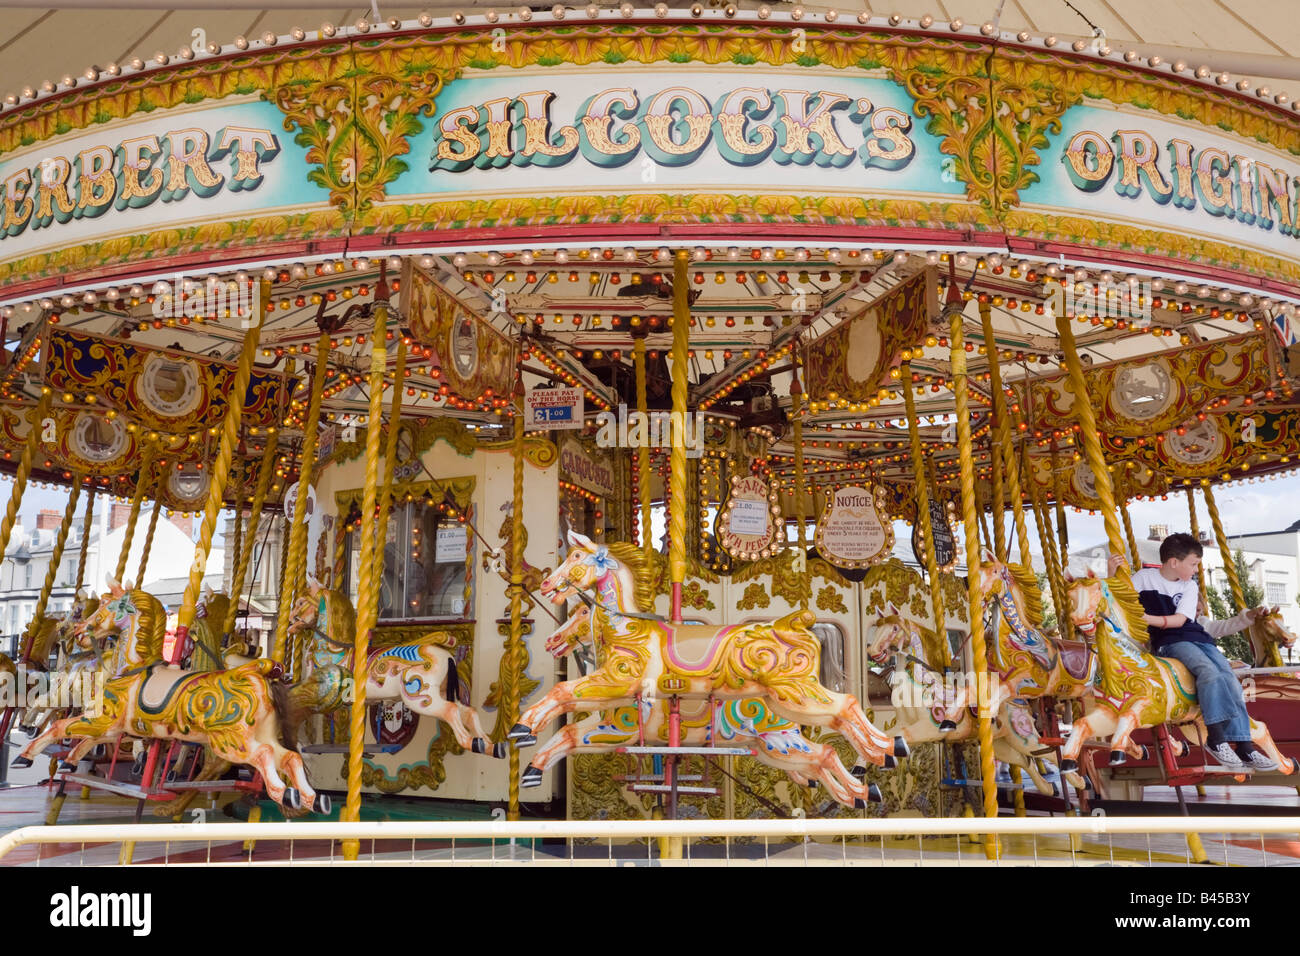 L'Angleterre traditionnelle britannique merry go round carousel ride avec les chevaux Banque D'Images